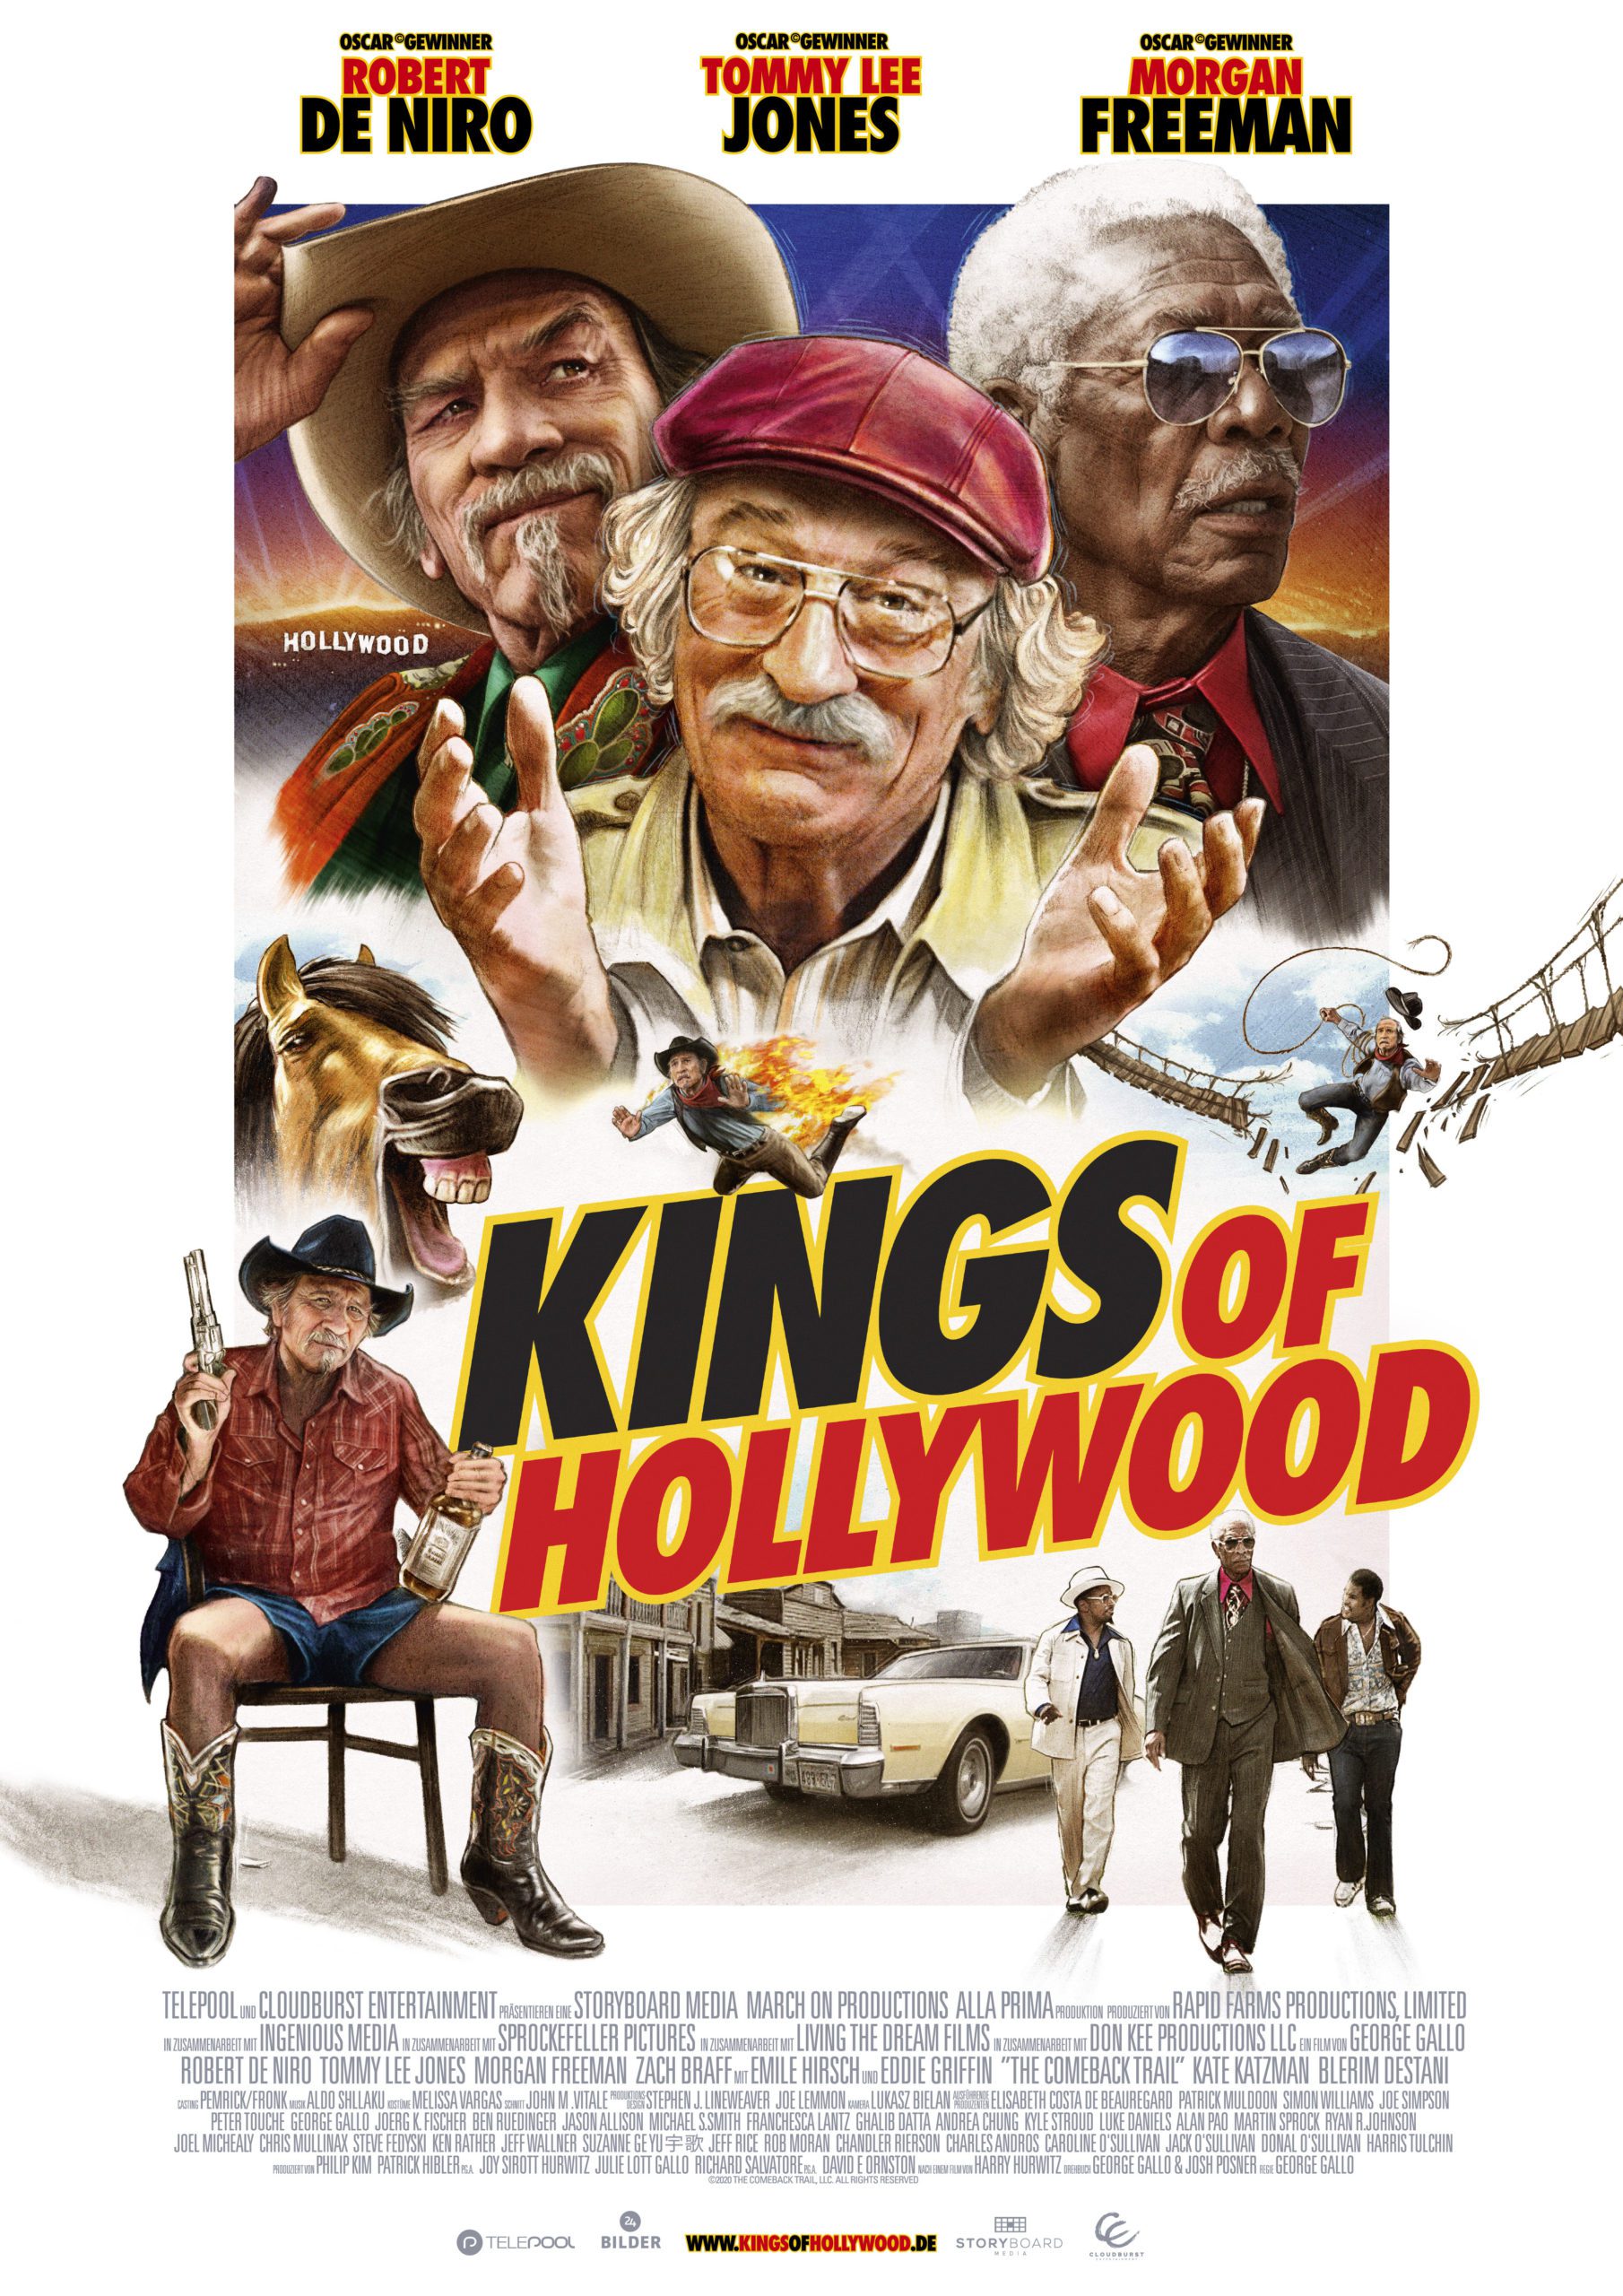 Robert De Niro in einer Komödie Kings Of Hollywood